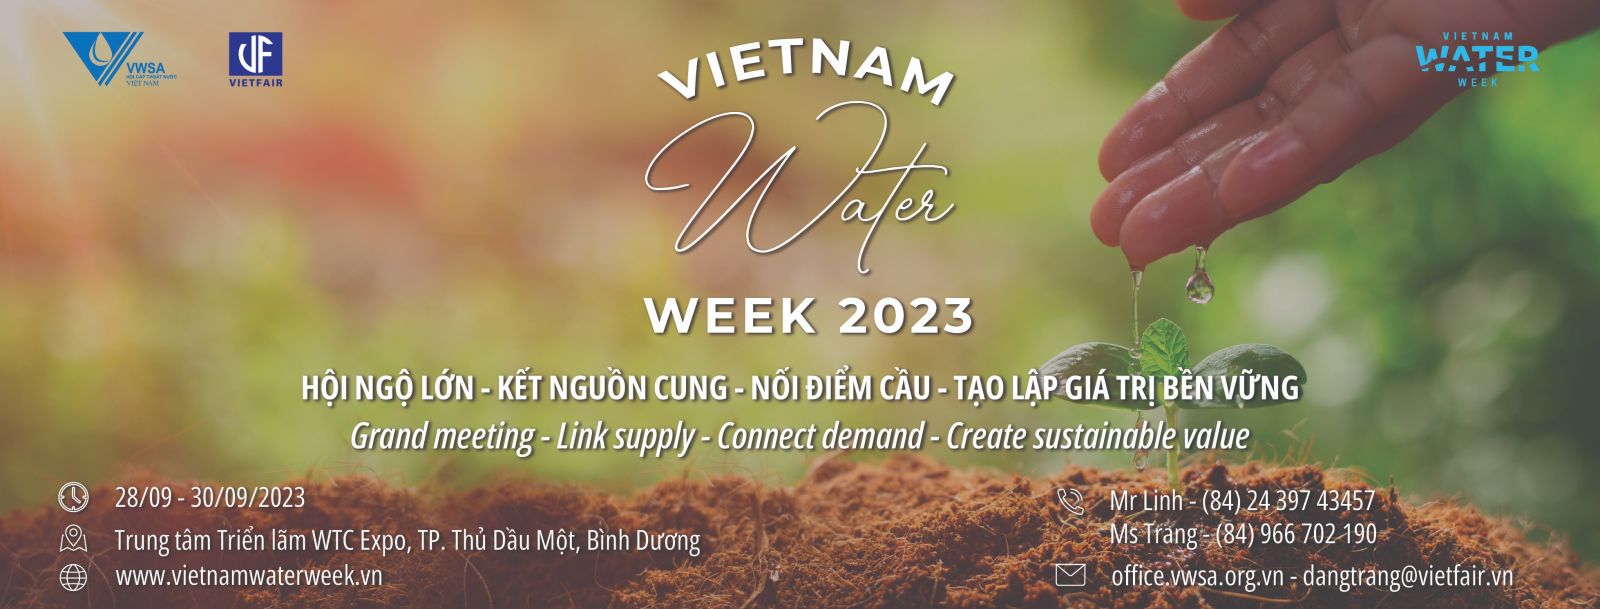 2863/Vietnam Water Week 2023: Nước vì chất lượng cuộc sống và phát triển bền vững